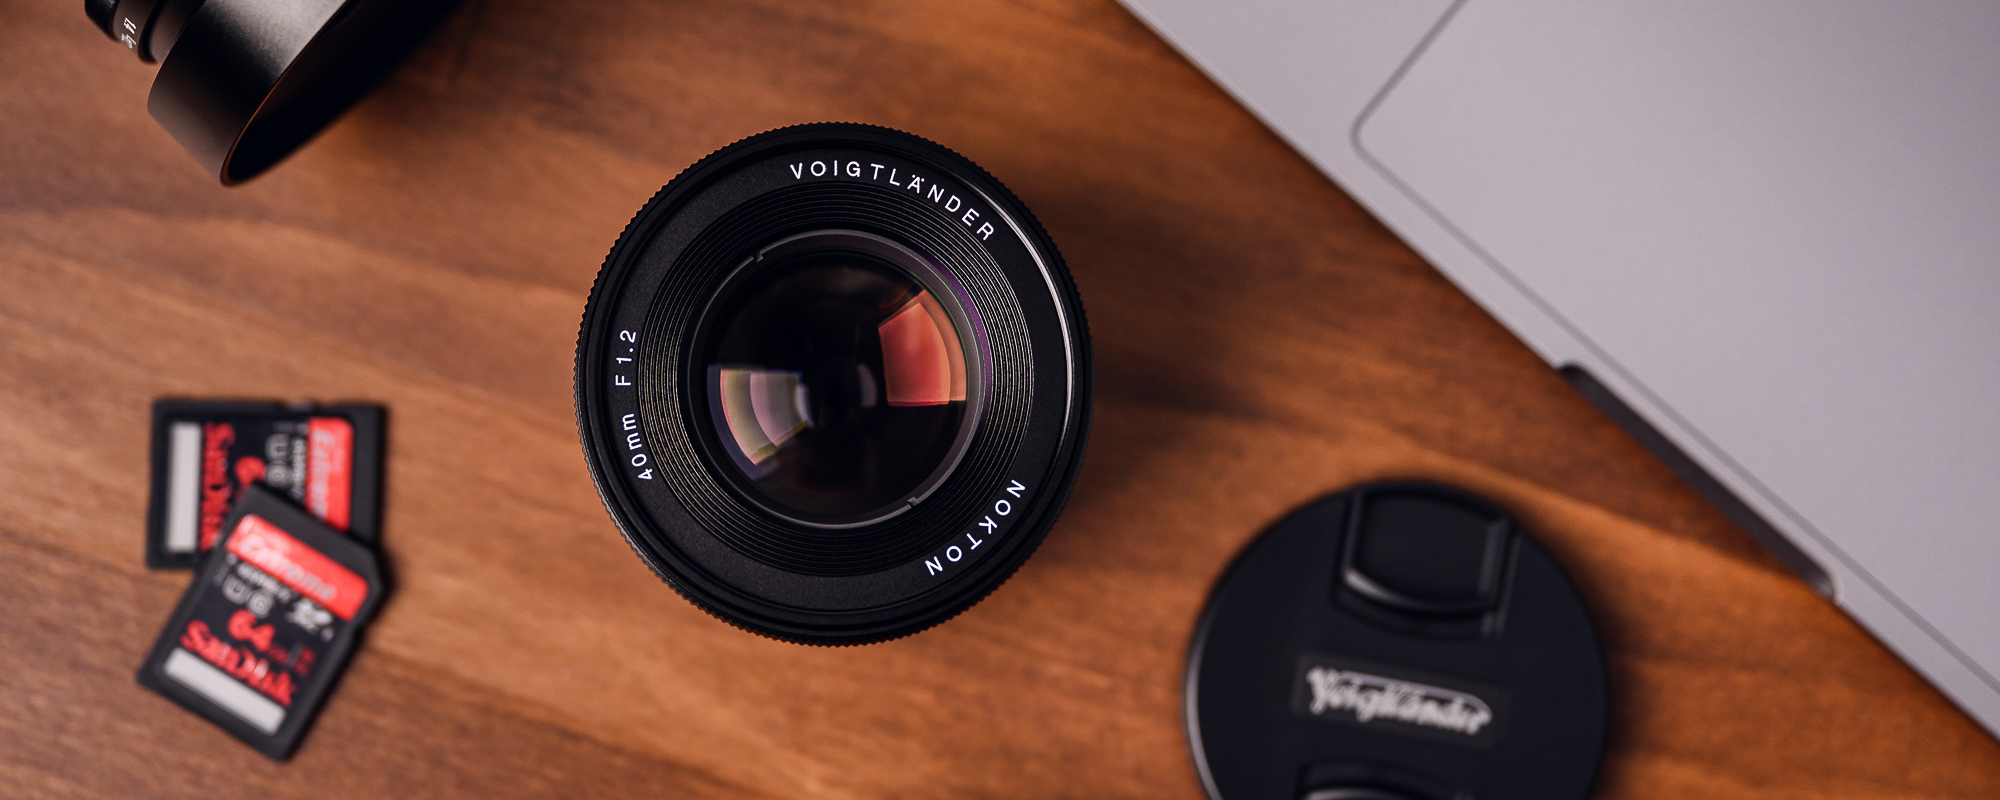 Obiektyw Voigtlander Nokton SE 40 mm f/1,2 do Sony E na drewnianym biurku widok na front obiektywu